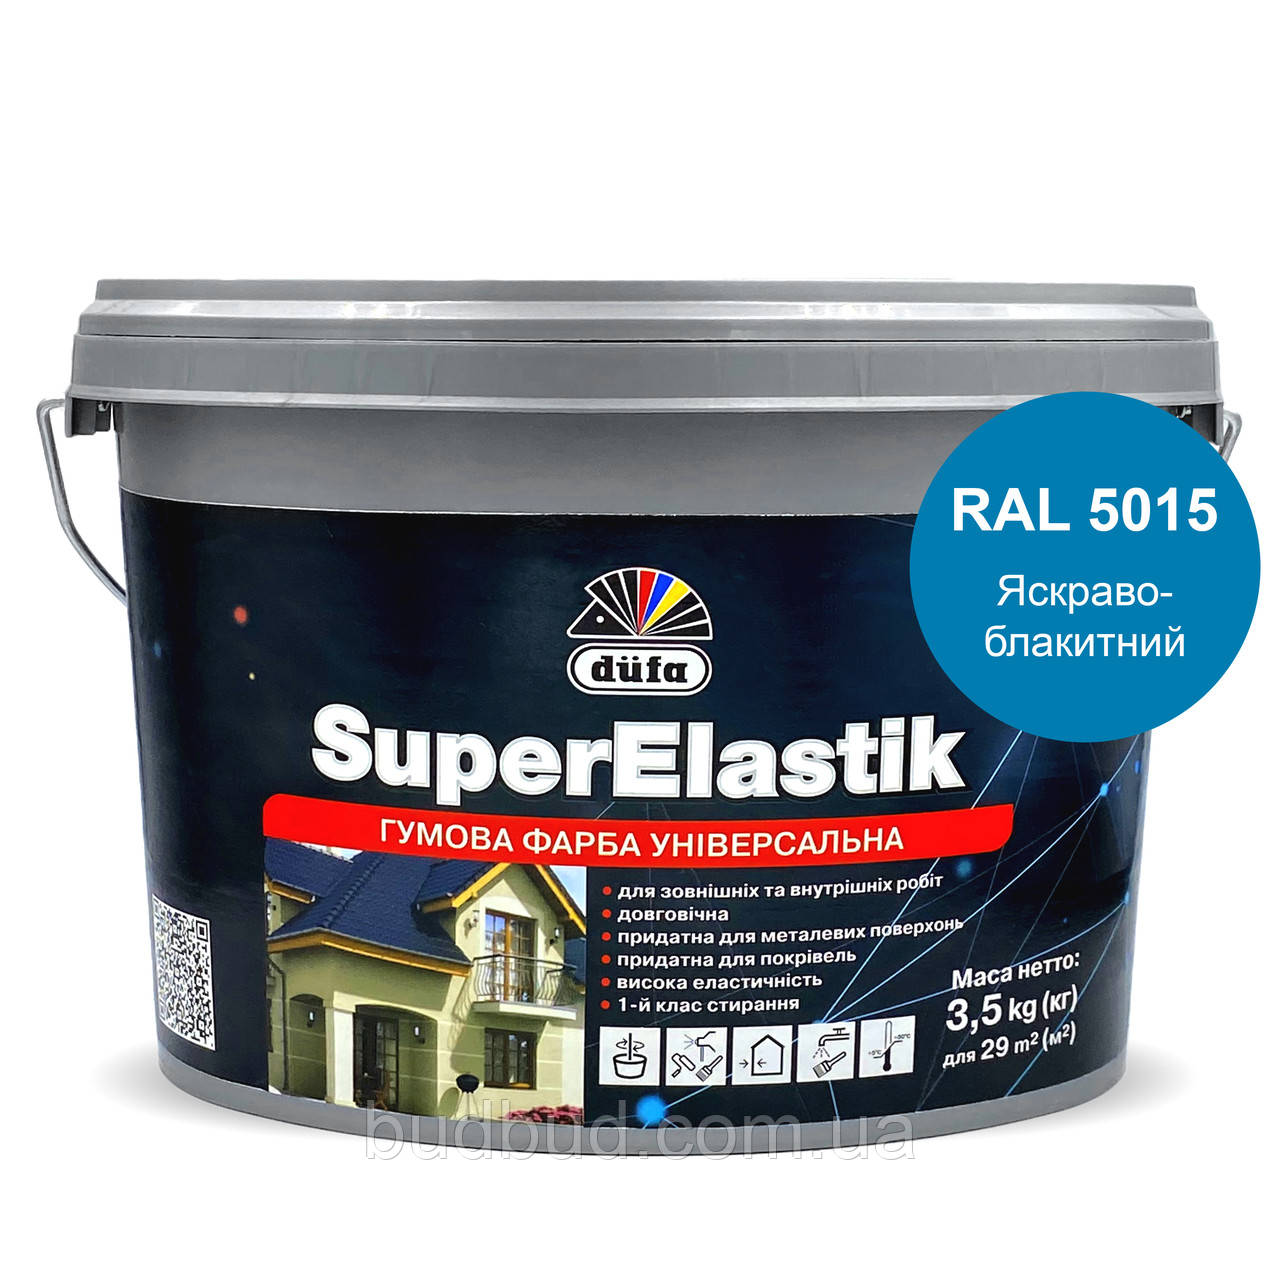 Гумова фарба універсальна Dufa SuperElastik Яскраво-Блакитний (RAL 5015) 1,2 кг